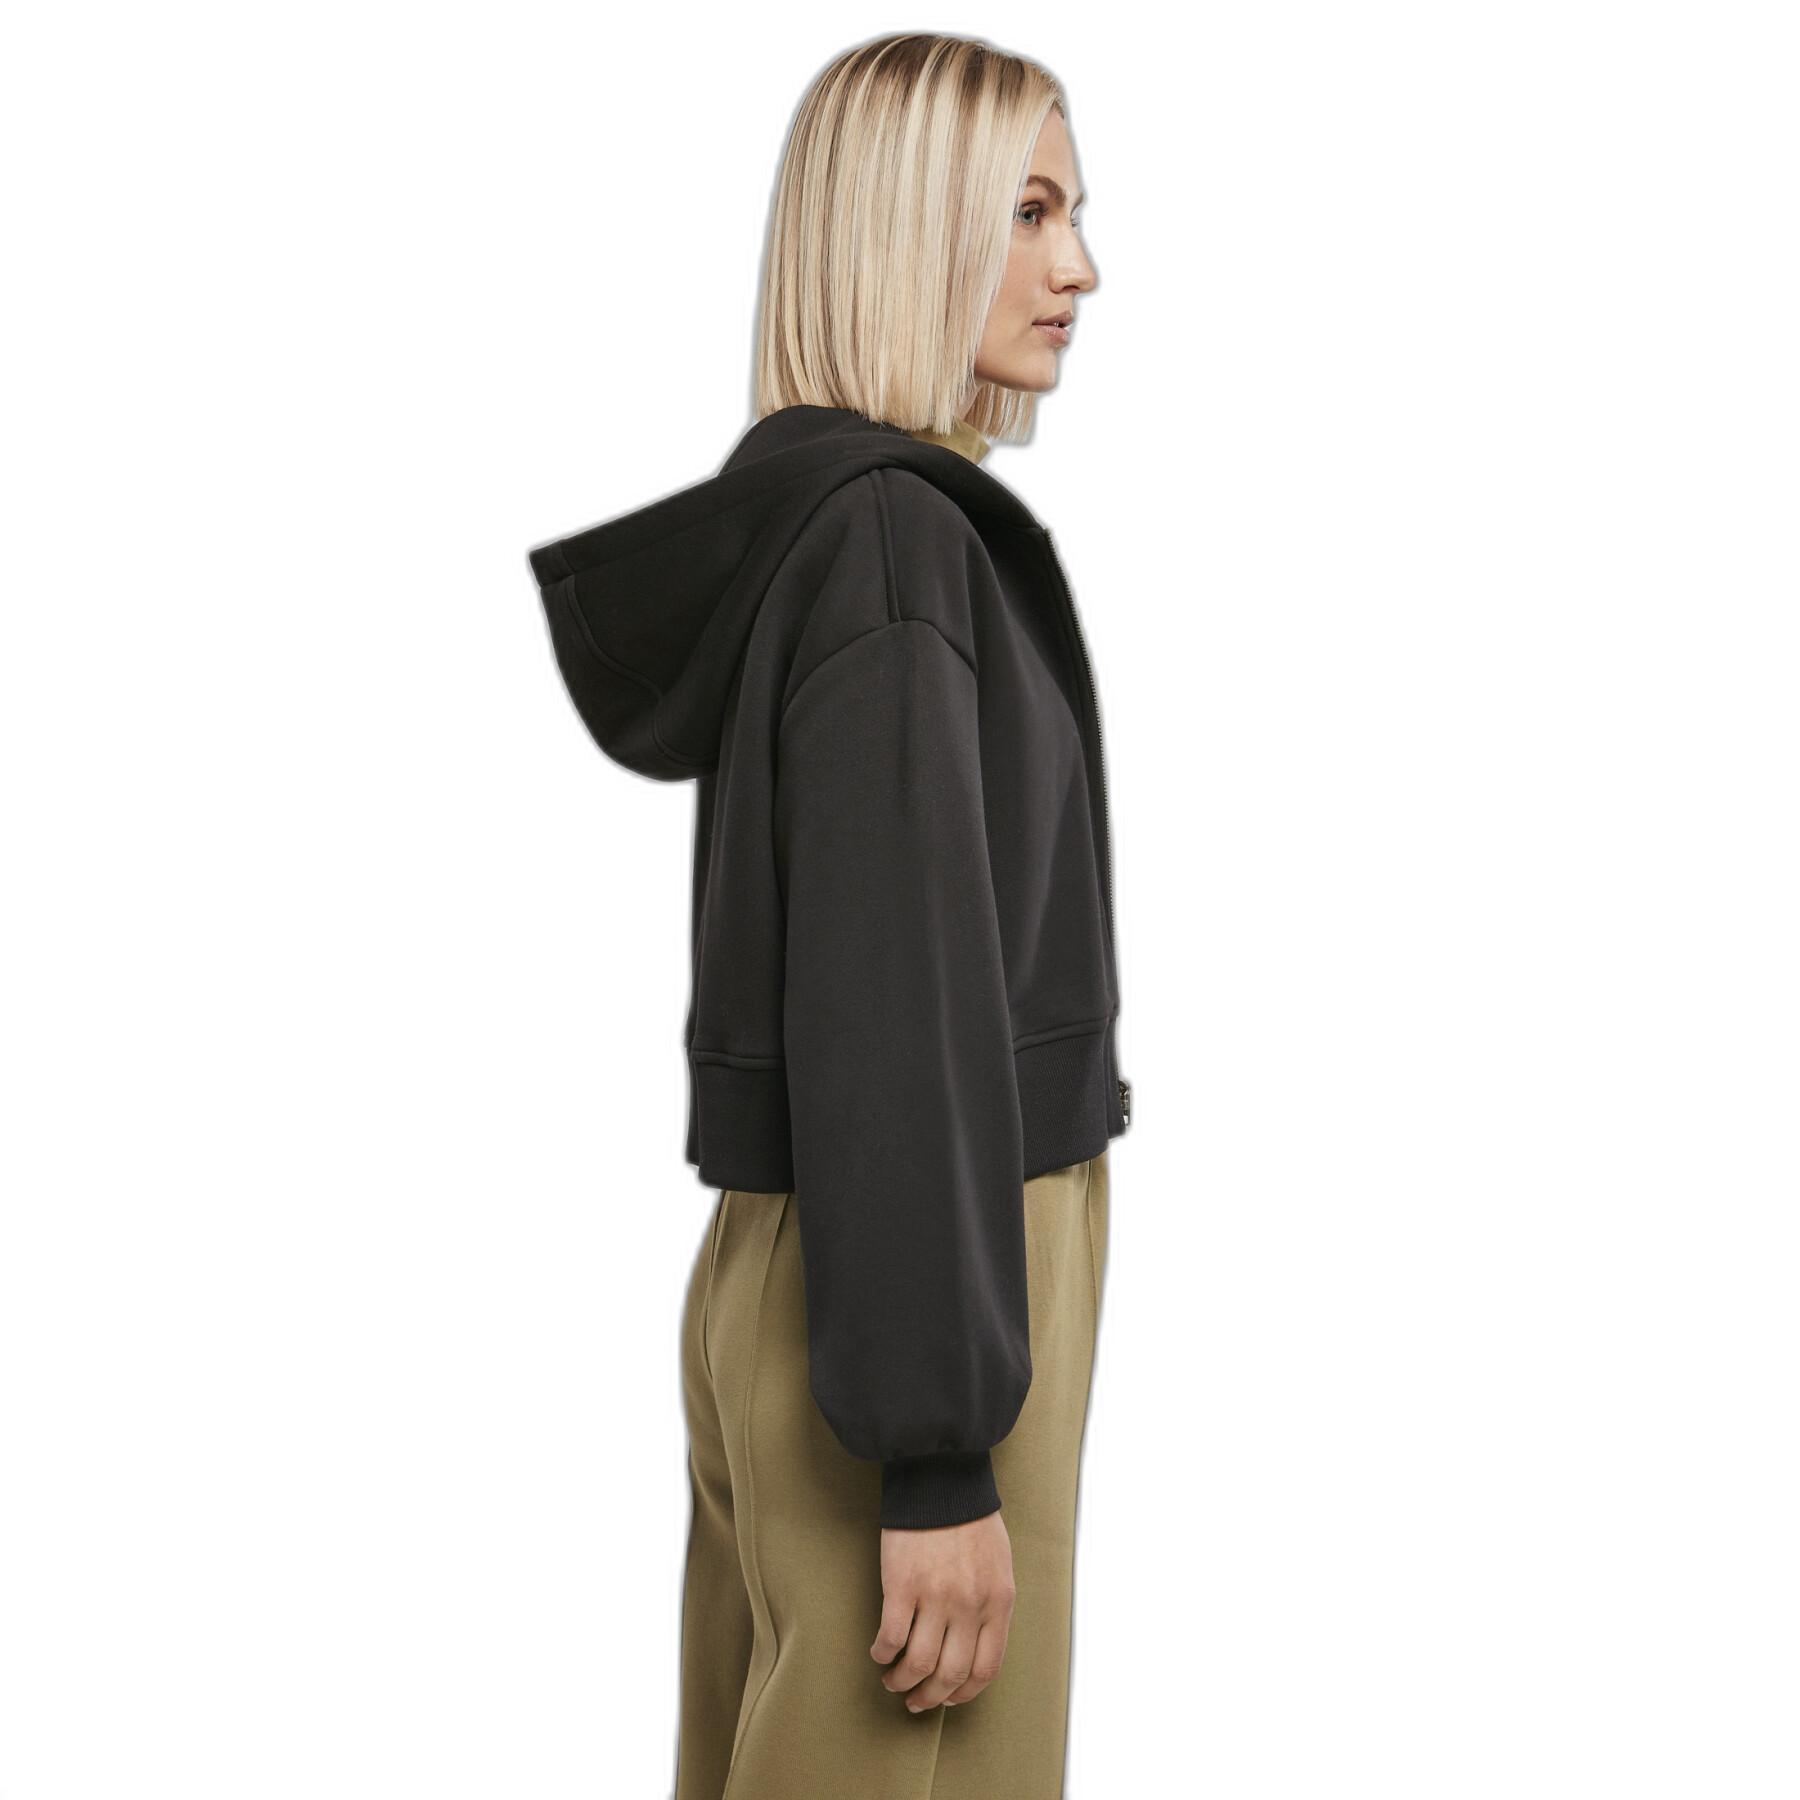 Sweatshirt à capuche courte zippée femme Urban Classics Oversized GT